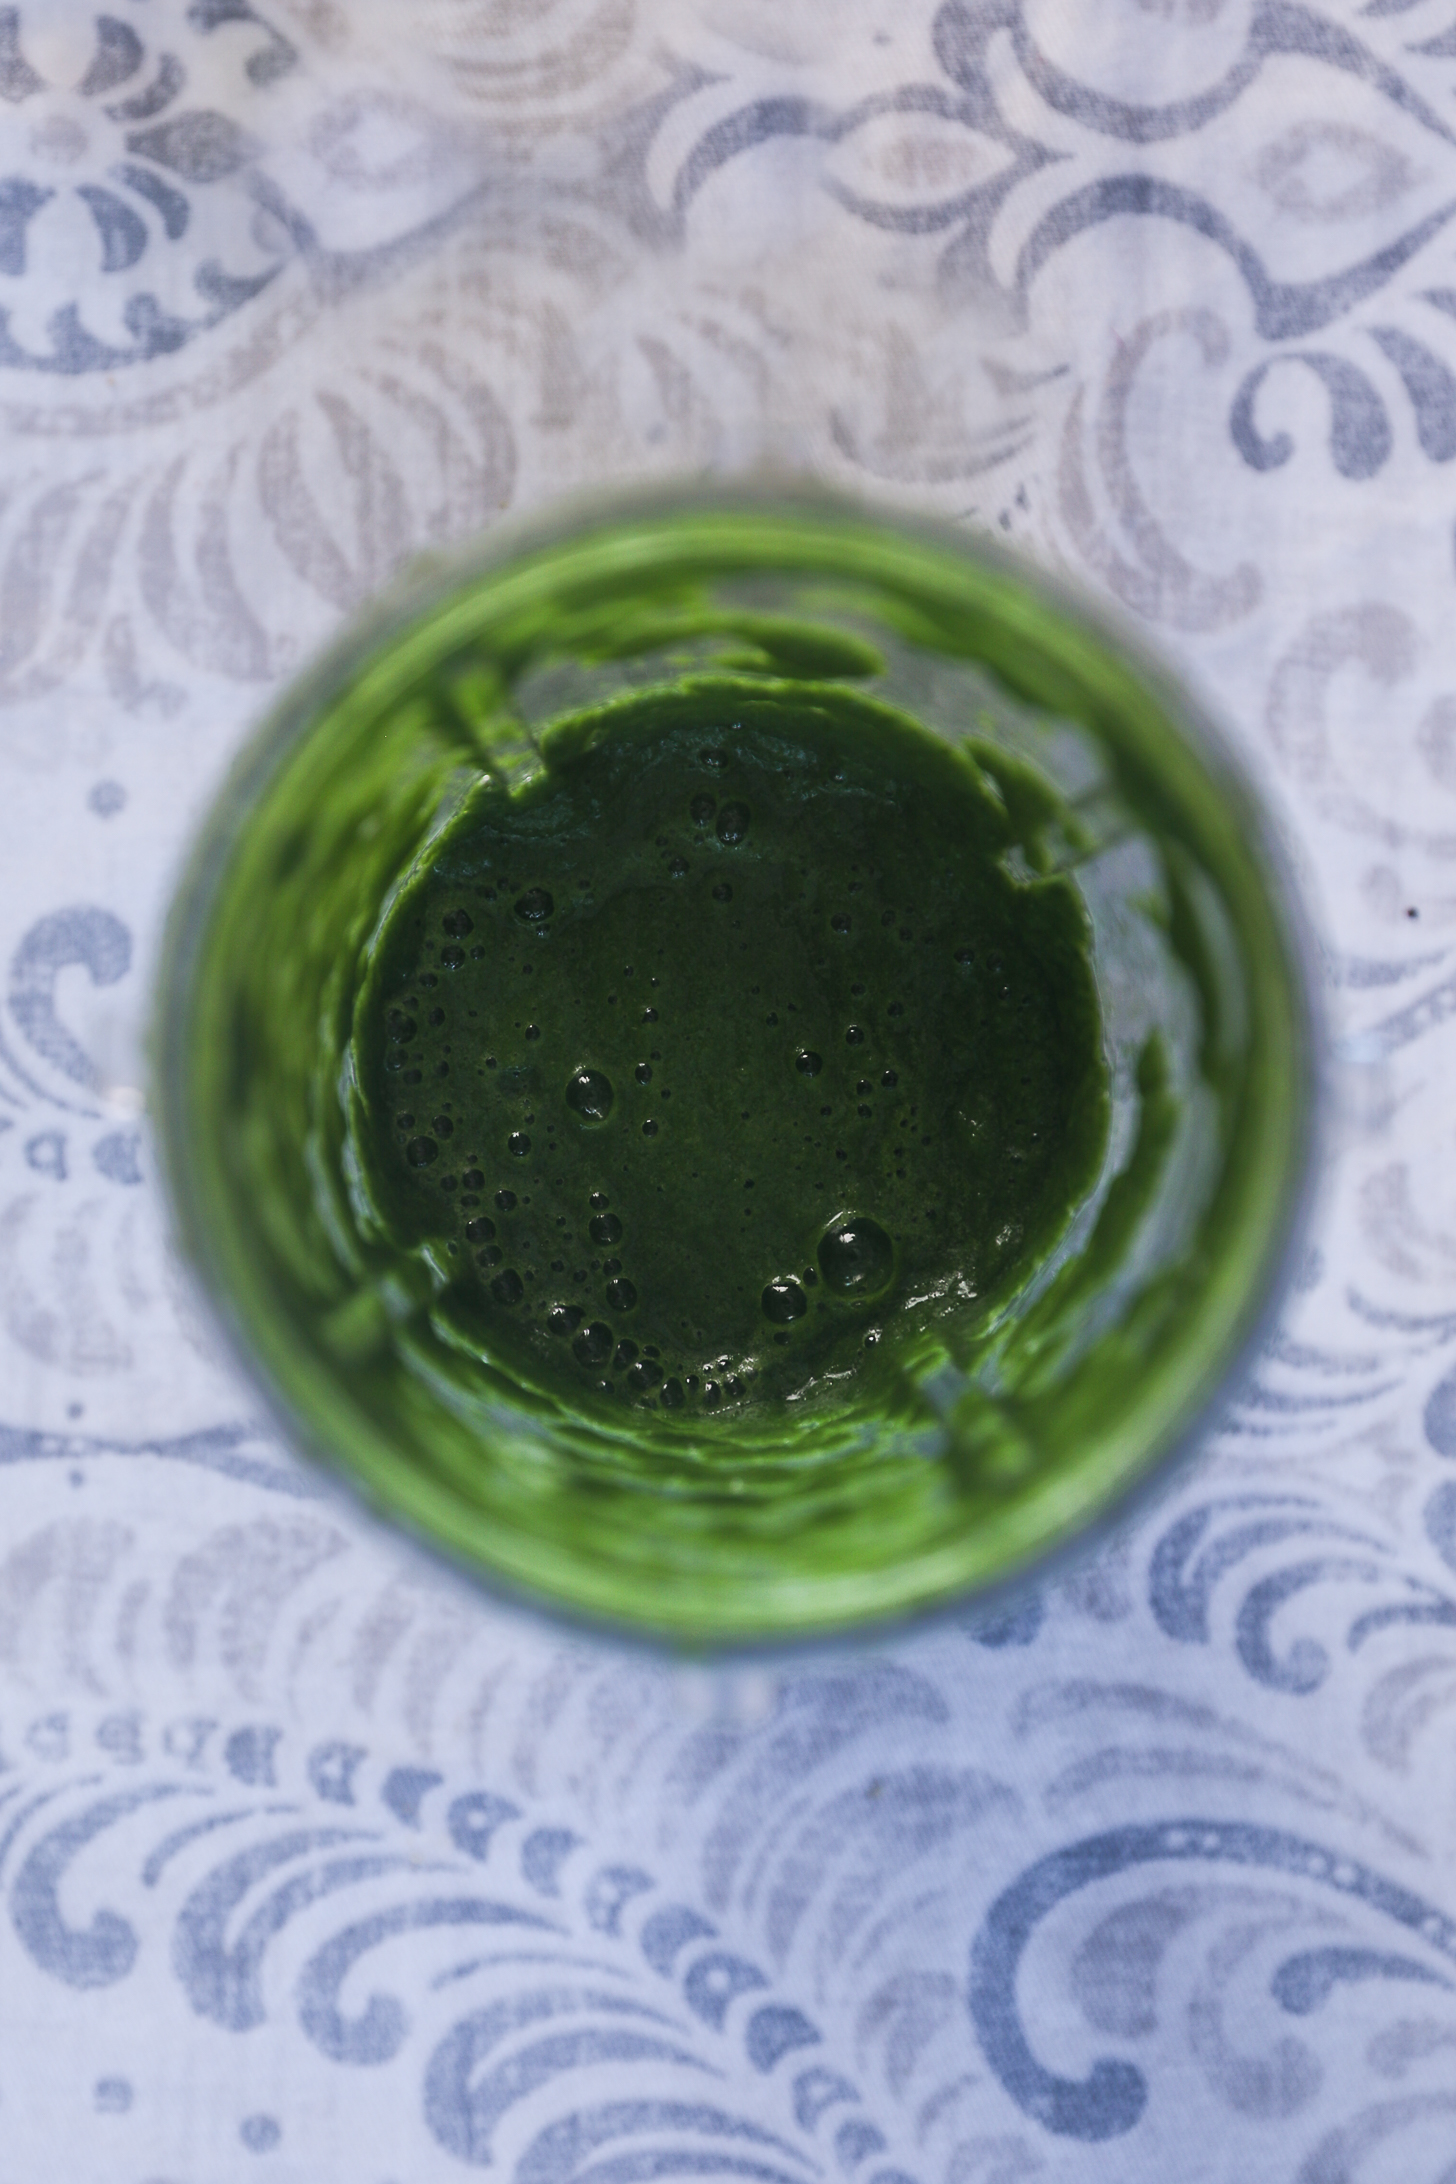 تصویر نمای بالا از یک فنجان مخلوط کن چاتنی سبز با حباب در بالا.